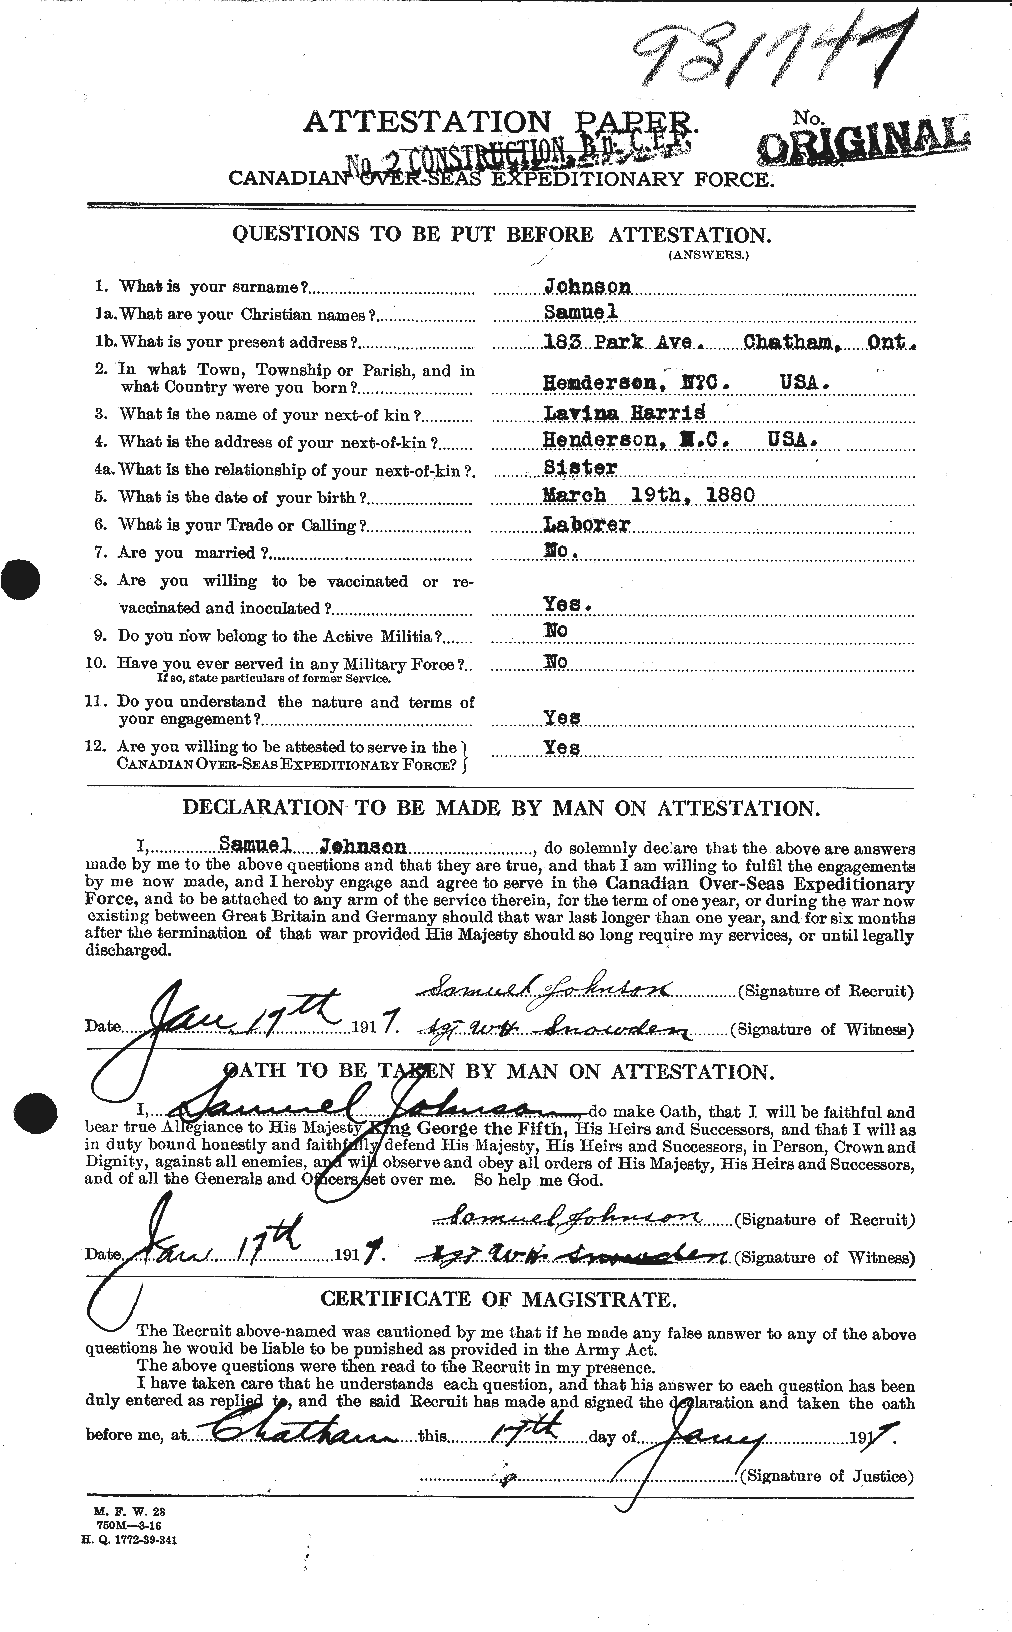 Dossiers du Personnel de la Première Guerre mondiale - CEC 417424a